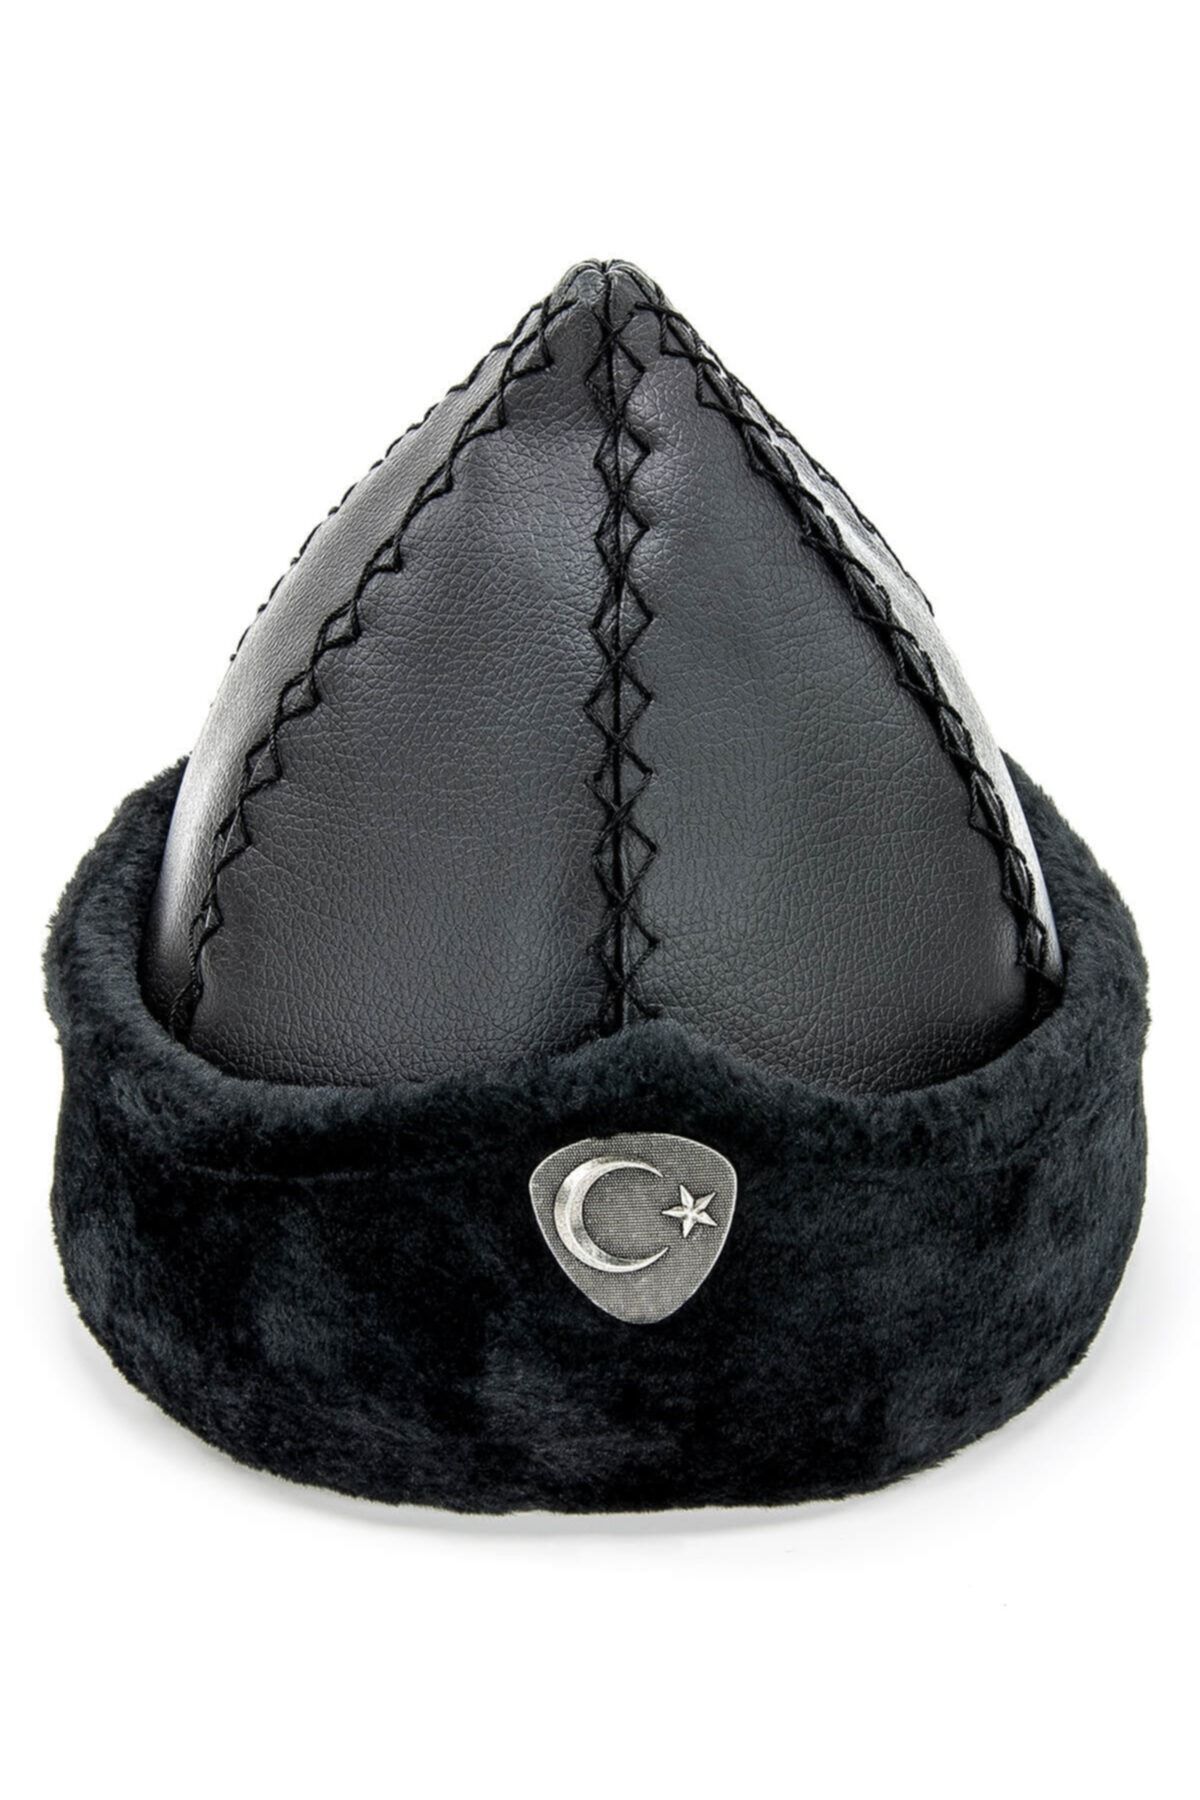 İhvan Selçuklu Börk Şapkası Siyah - 2009 - 1180